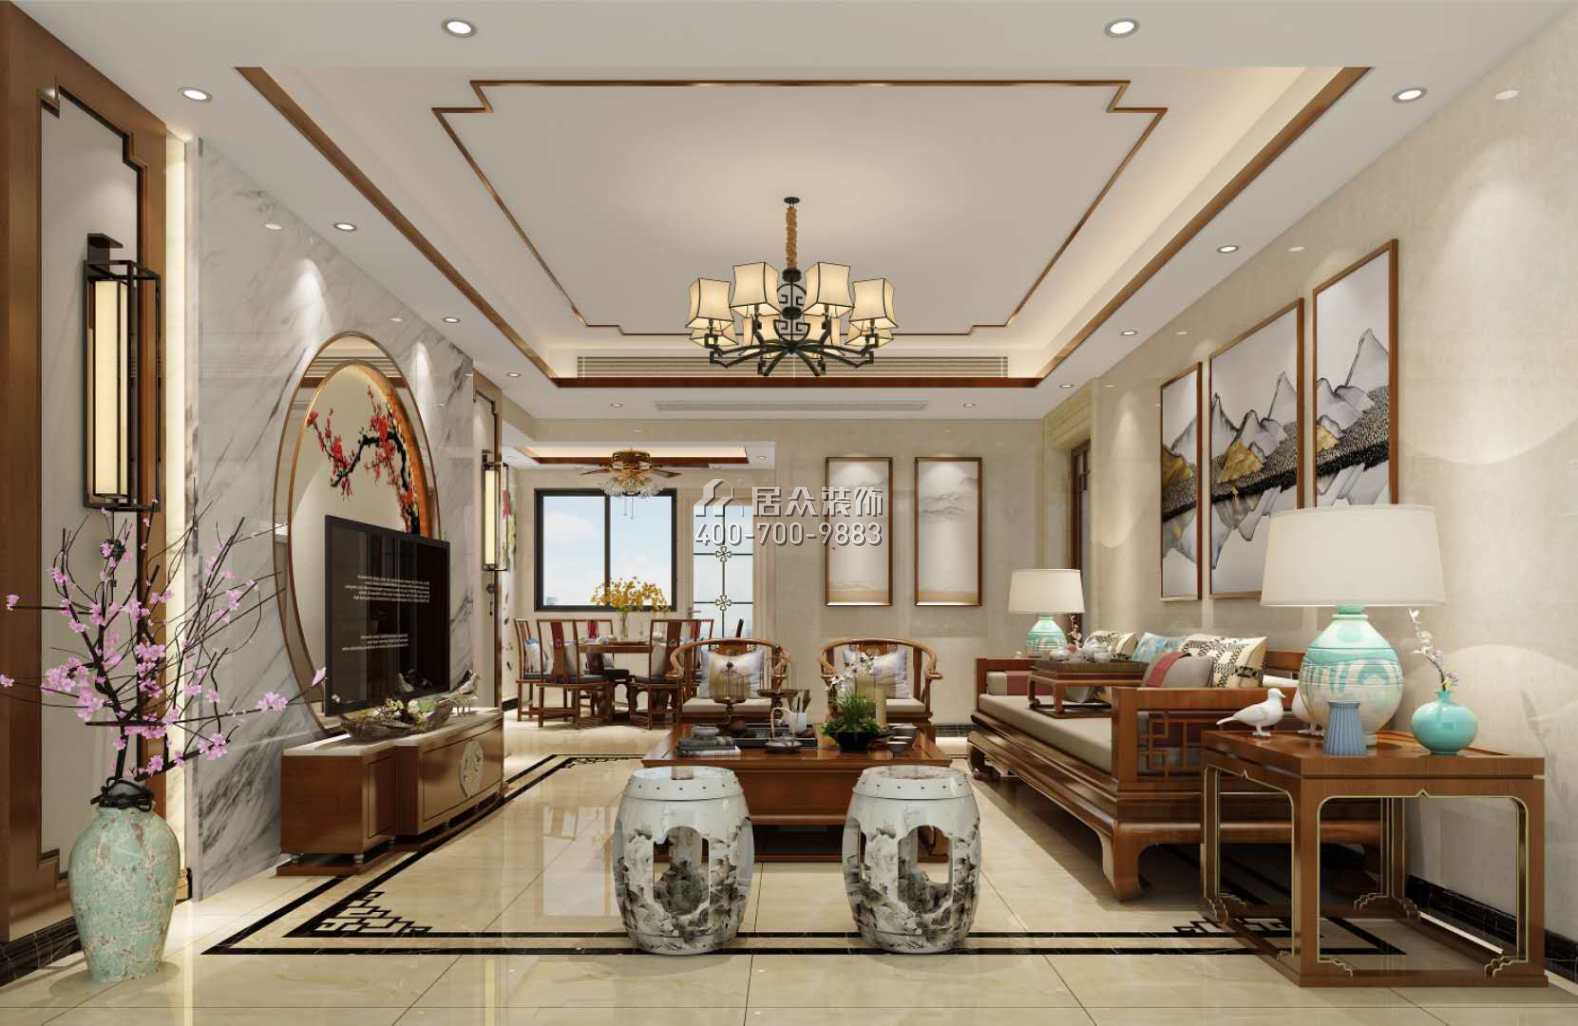 锦江豪苑137平方米中式风格平层户型客厅装修效果图